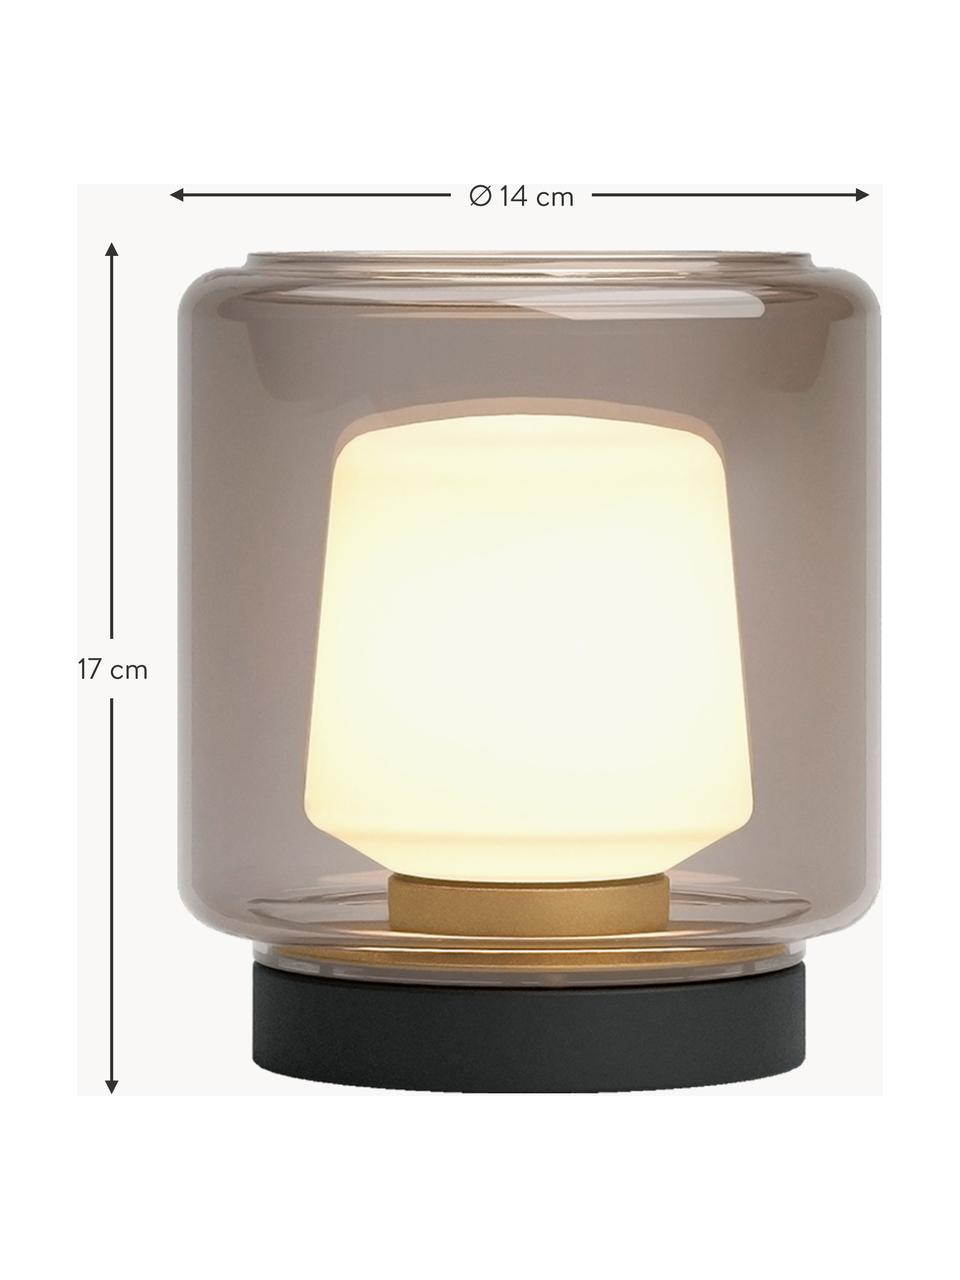 Lampe à poser LED mobile d'extérieur New York, intensité variable, Taupe, noir, Ø 20 cm